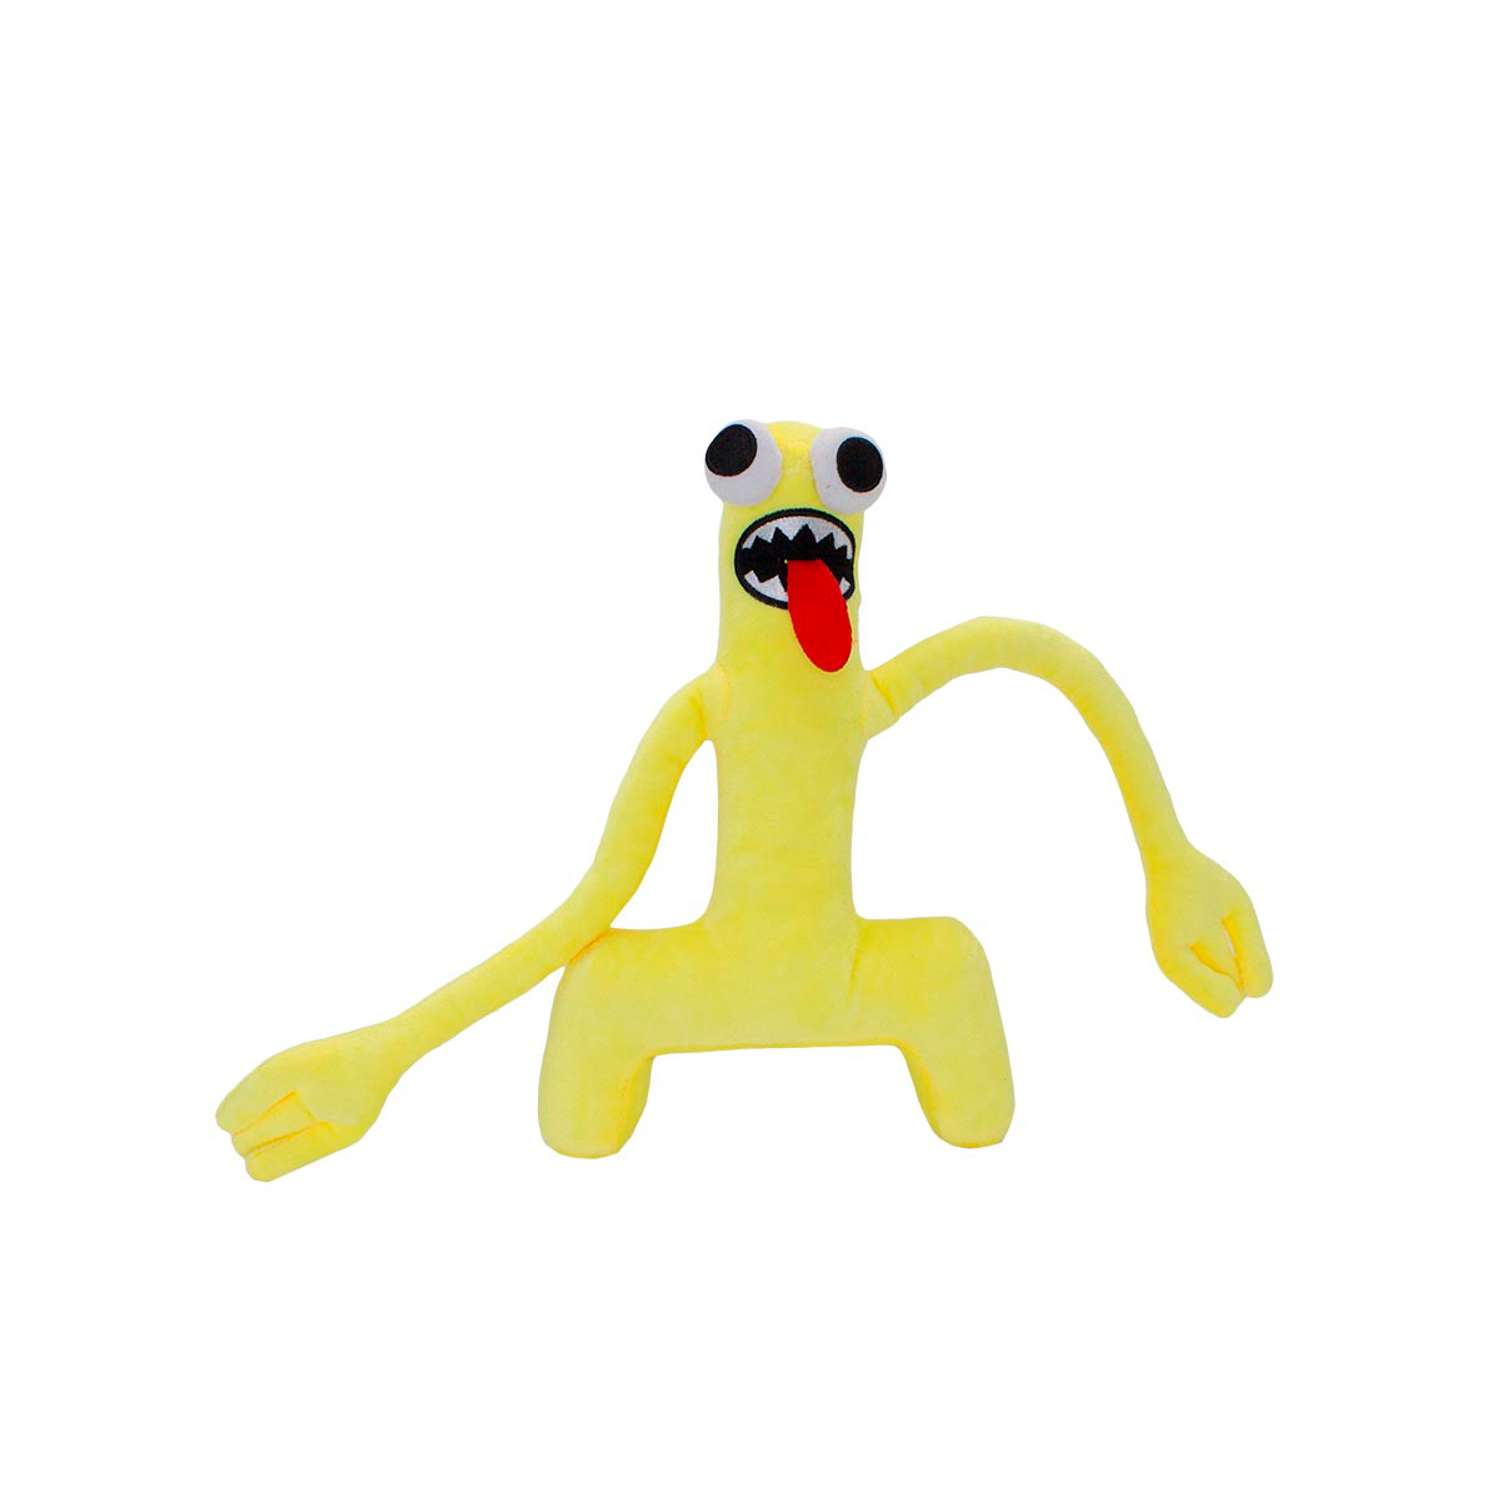 Мягкая игрушка Михи-Михи радужные друзья Грин желтый 28см - фото 1